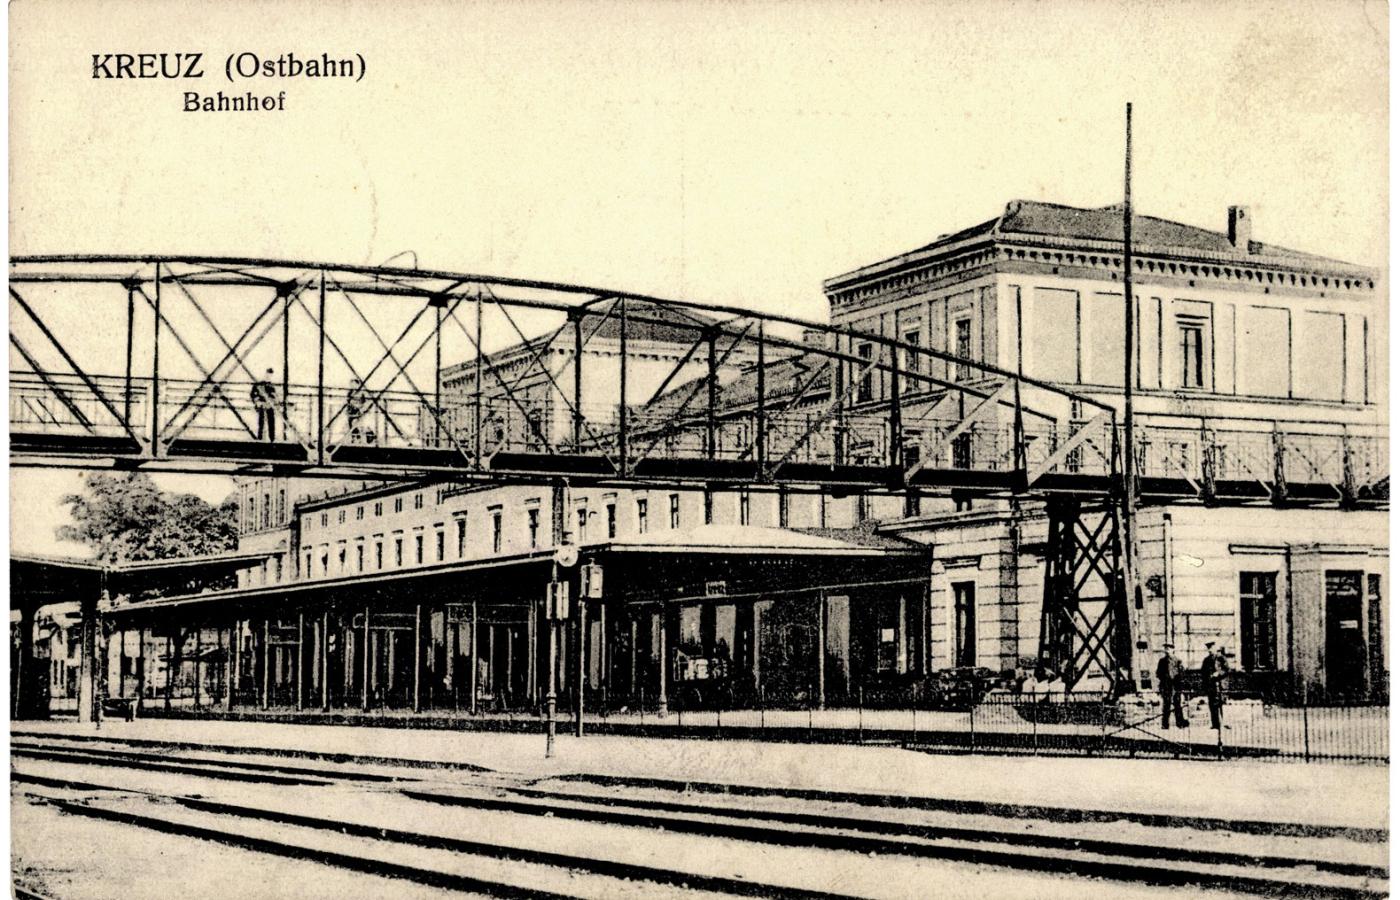 Dworzec kolejowy w Kreuz Ostbahn (Krzyżu), 1915 r.